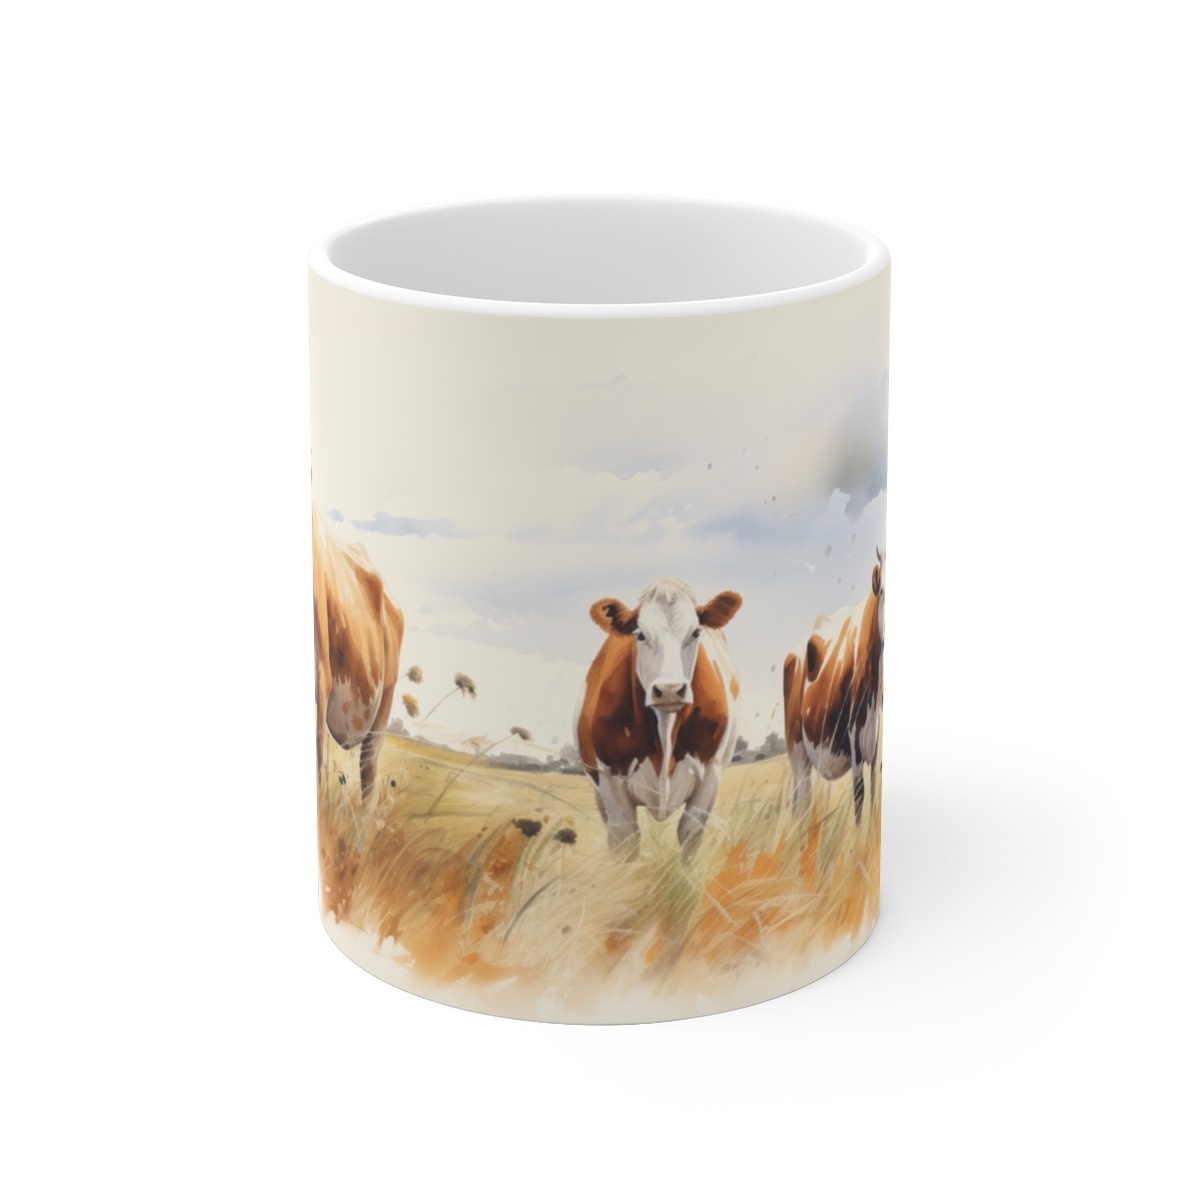 Ländliche Tasse mit Rinder- und Kuhmotiv im Aquarellstil